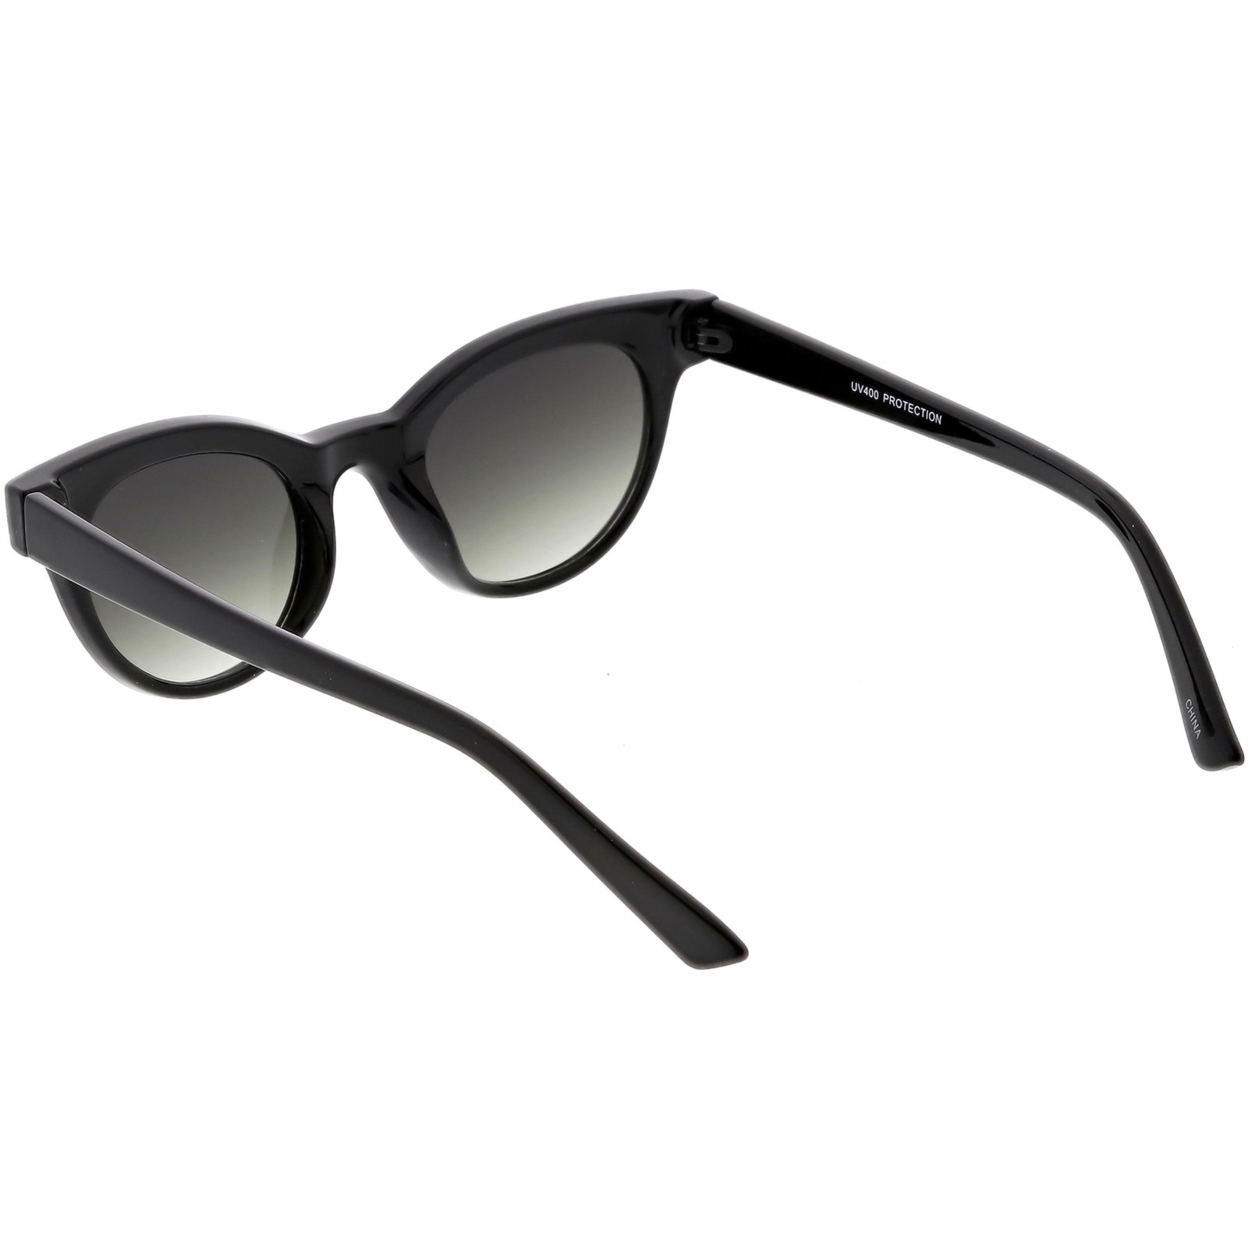 Women's Horn Rimmed Cat Eye Sunglasses Neutral Colored Round Lens Cat Eye Sunglasses 47mm - Shiny Black / Lavender